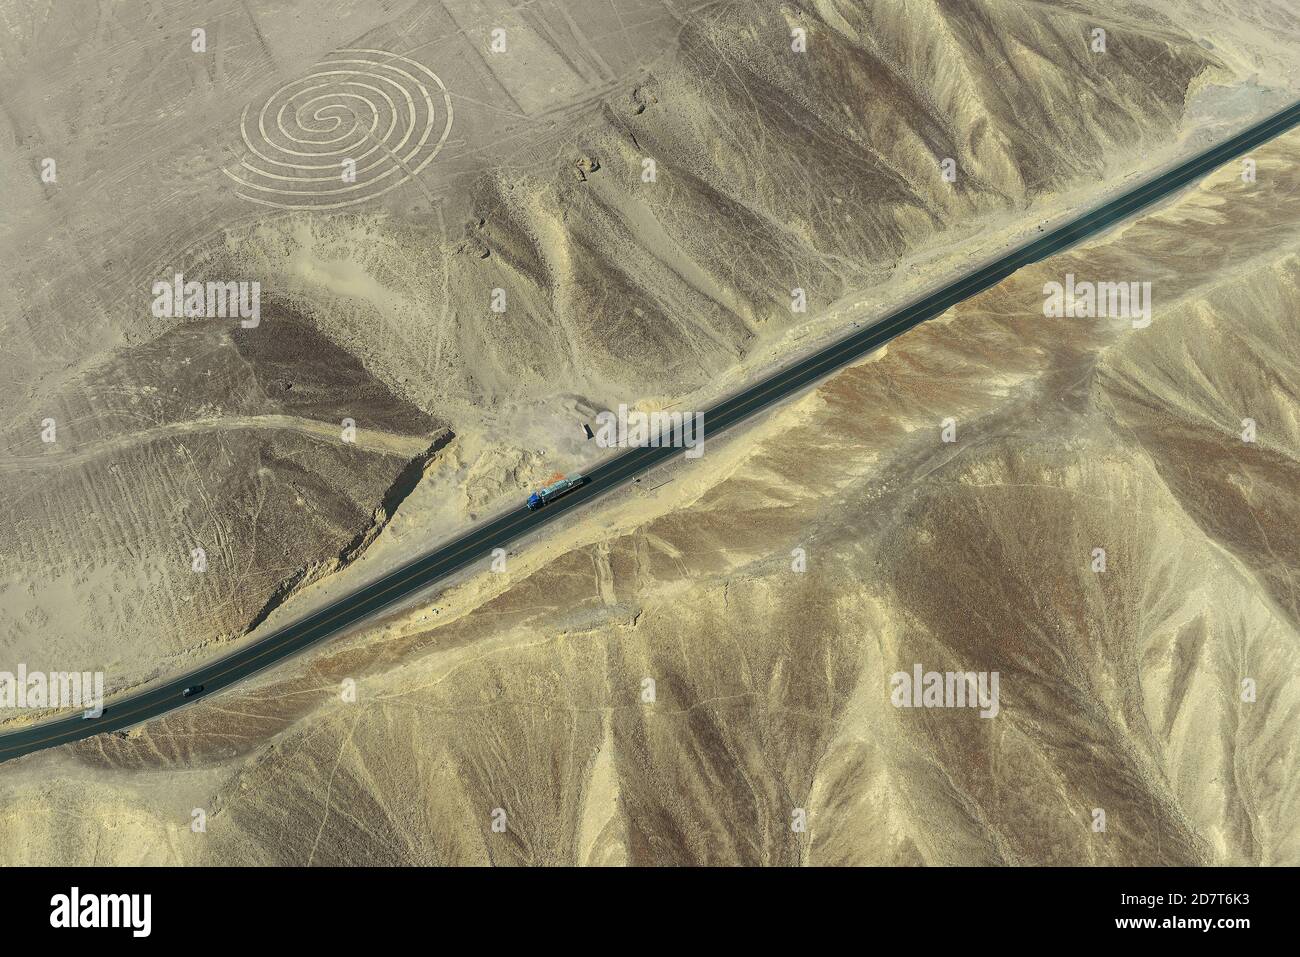 Luftaufnahme der spiralförmigen Geoglyphen-Zeichnung in der peruanischen Wüste, bekannt als die geheimnisvollen Nazca-Linien mit Panamerican Highway in der Nähe von Nazca Stadt, Peru. Stockfoto